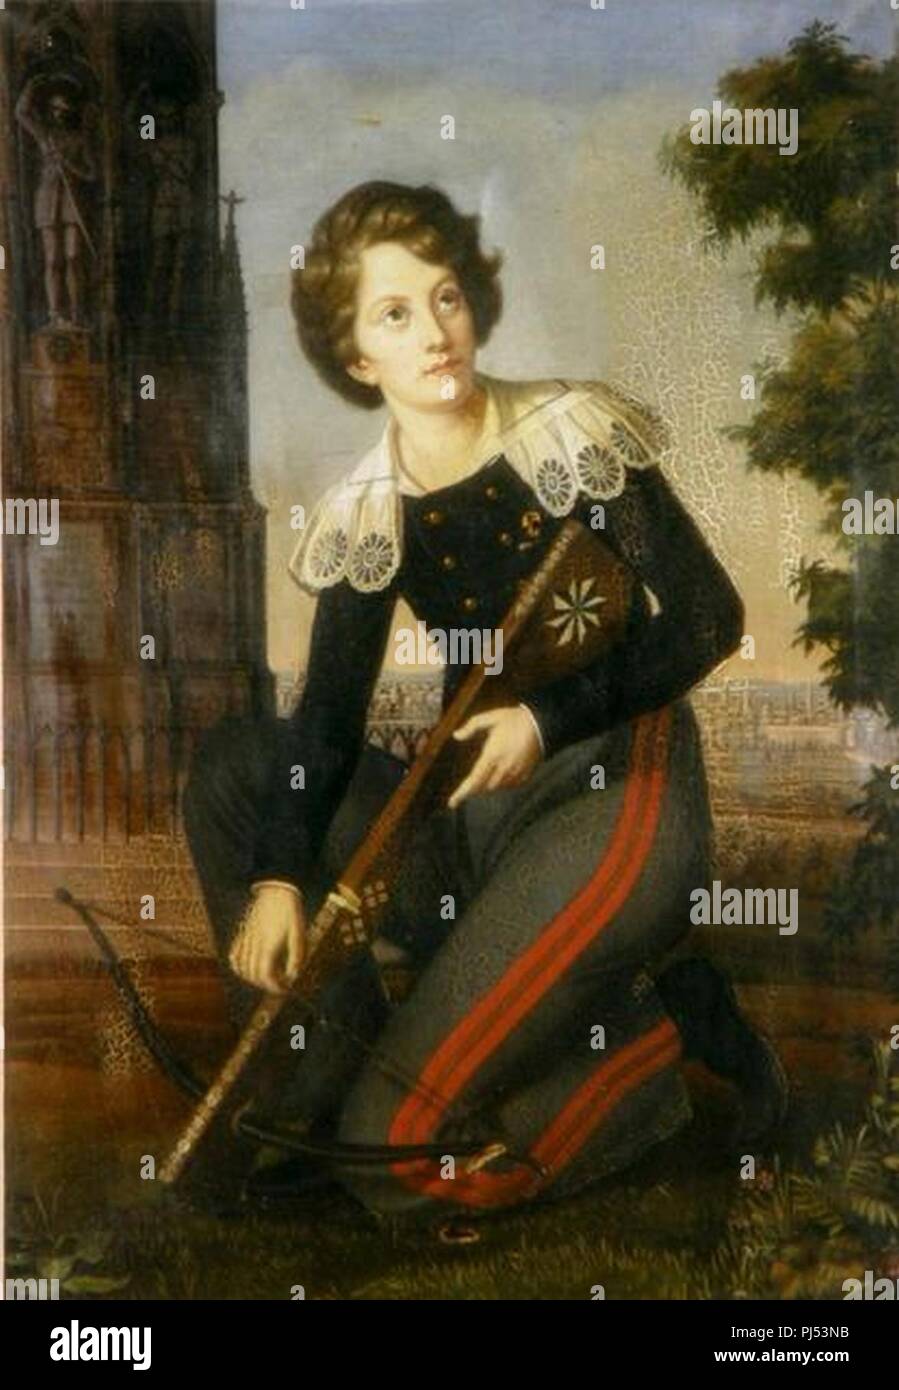 Caroline Bardua - Porträt des Fürsten Adalbert von Hohenzollern mit Armbrust. Stock Photo